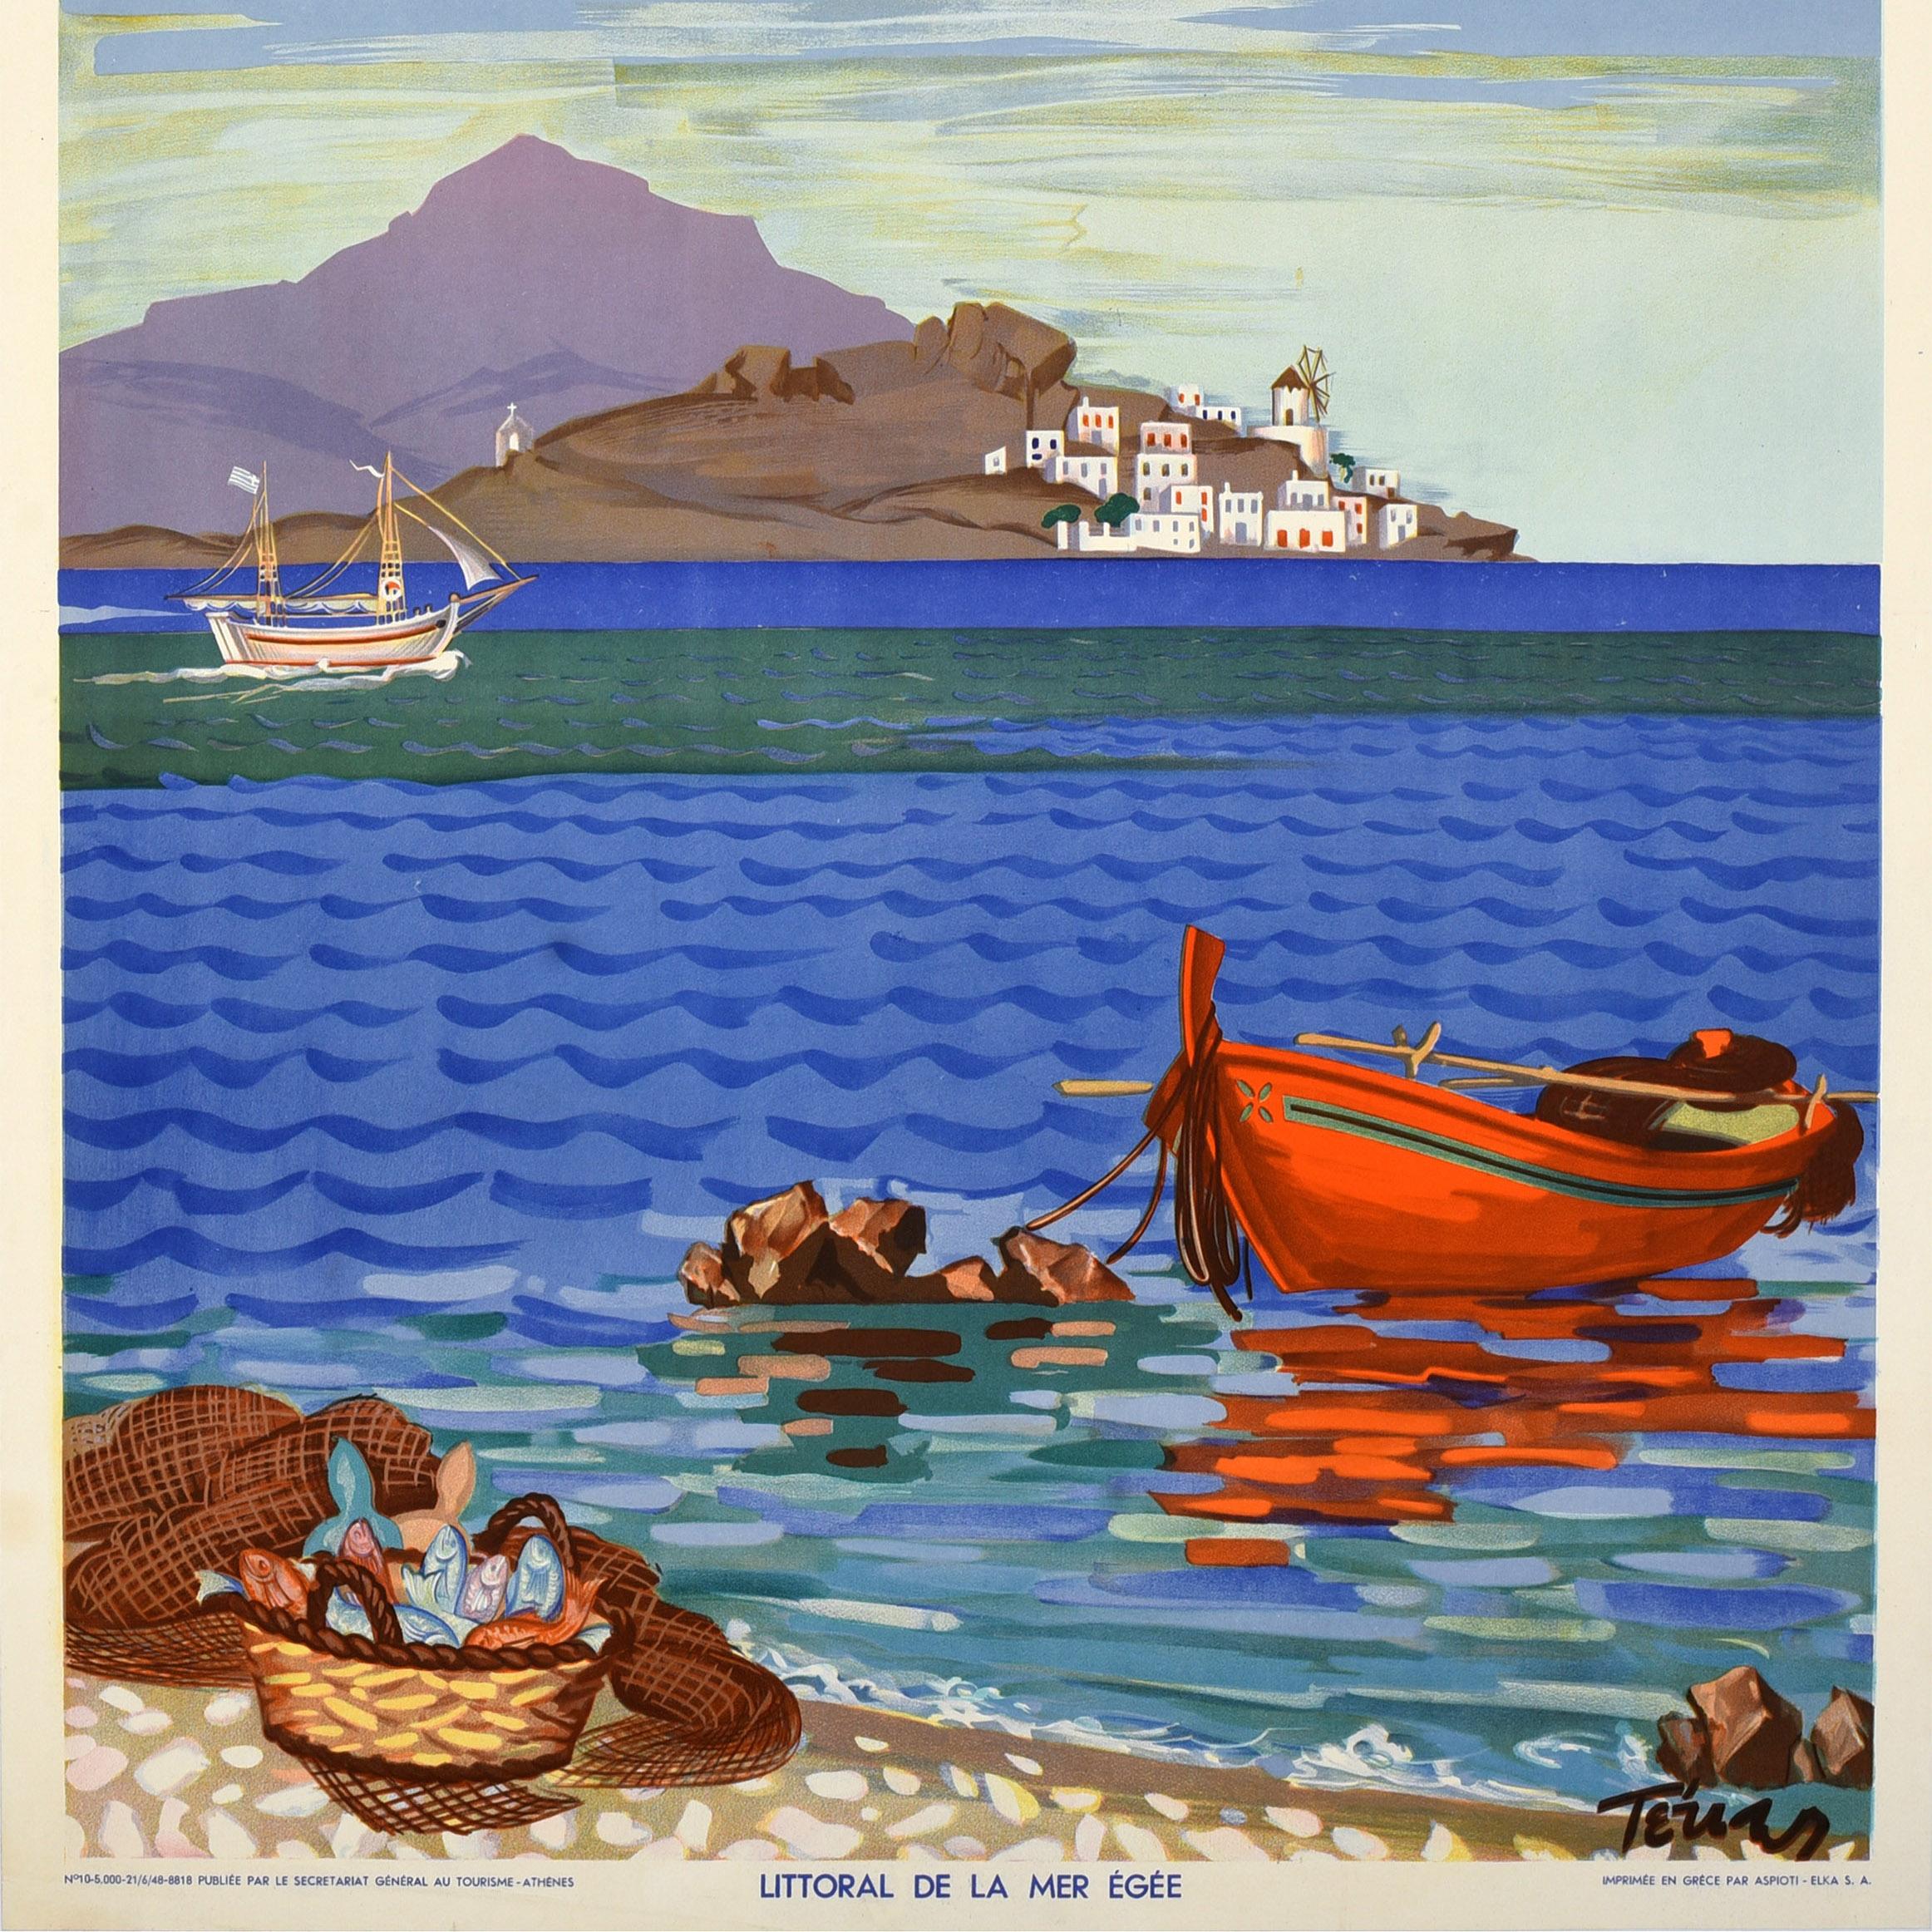 Original Vintage-Reiseplakat - Griechenland Ägäische Küste / Grece Littoral de la mer egee - mit einer farbenfrohen Küstenansicht, die ein hölzernes Ruderboot zeigt, das an einem Felsen vertäut ist und sich im Wasser spiegelt, in der Nähe von